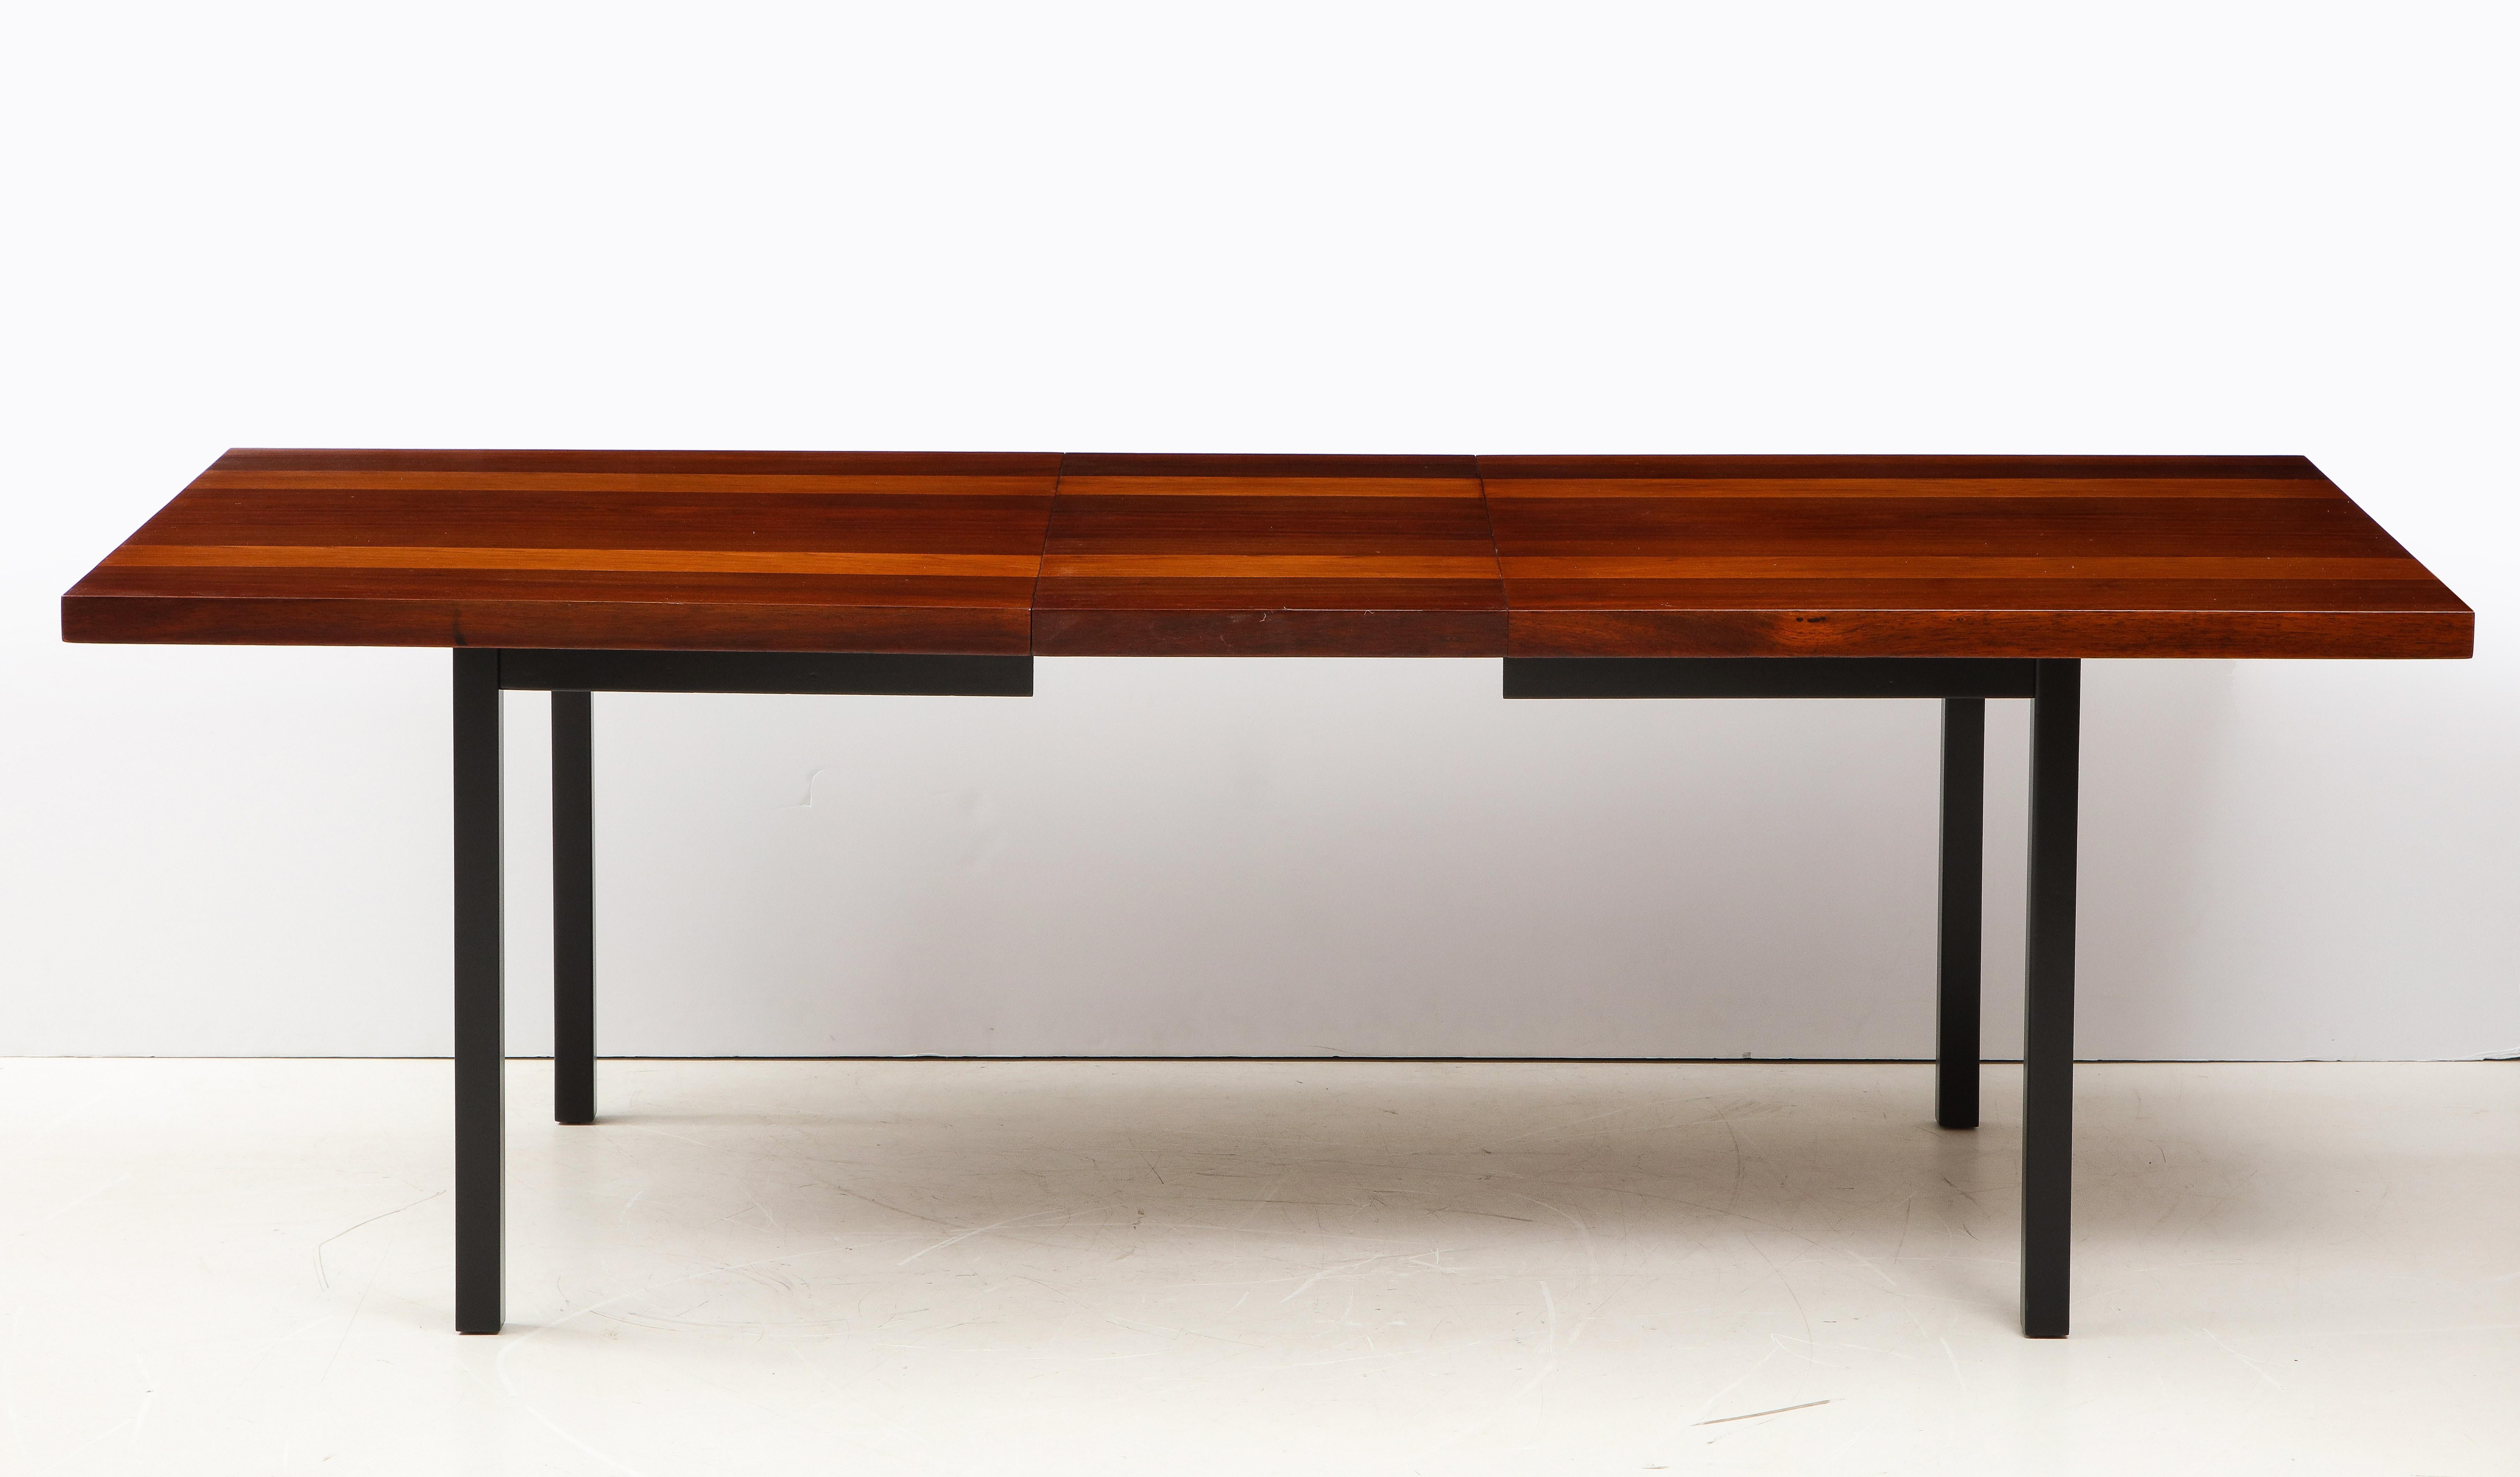 Atemberaubende 1960's Mid-Century Modern Milo Baughman entworfen für Directional Esstisch mit zwei Blätter, vollständig restauriert mit geringfügigen Verschleiß und Patina aufgrund von Alter und Nutzung.

Die Länge ohne die Blätter beträgt 72'',